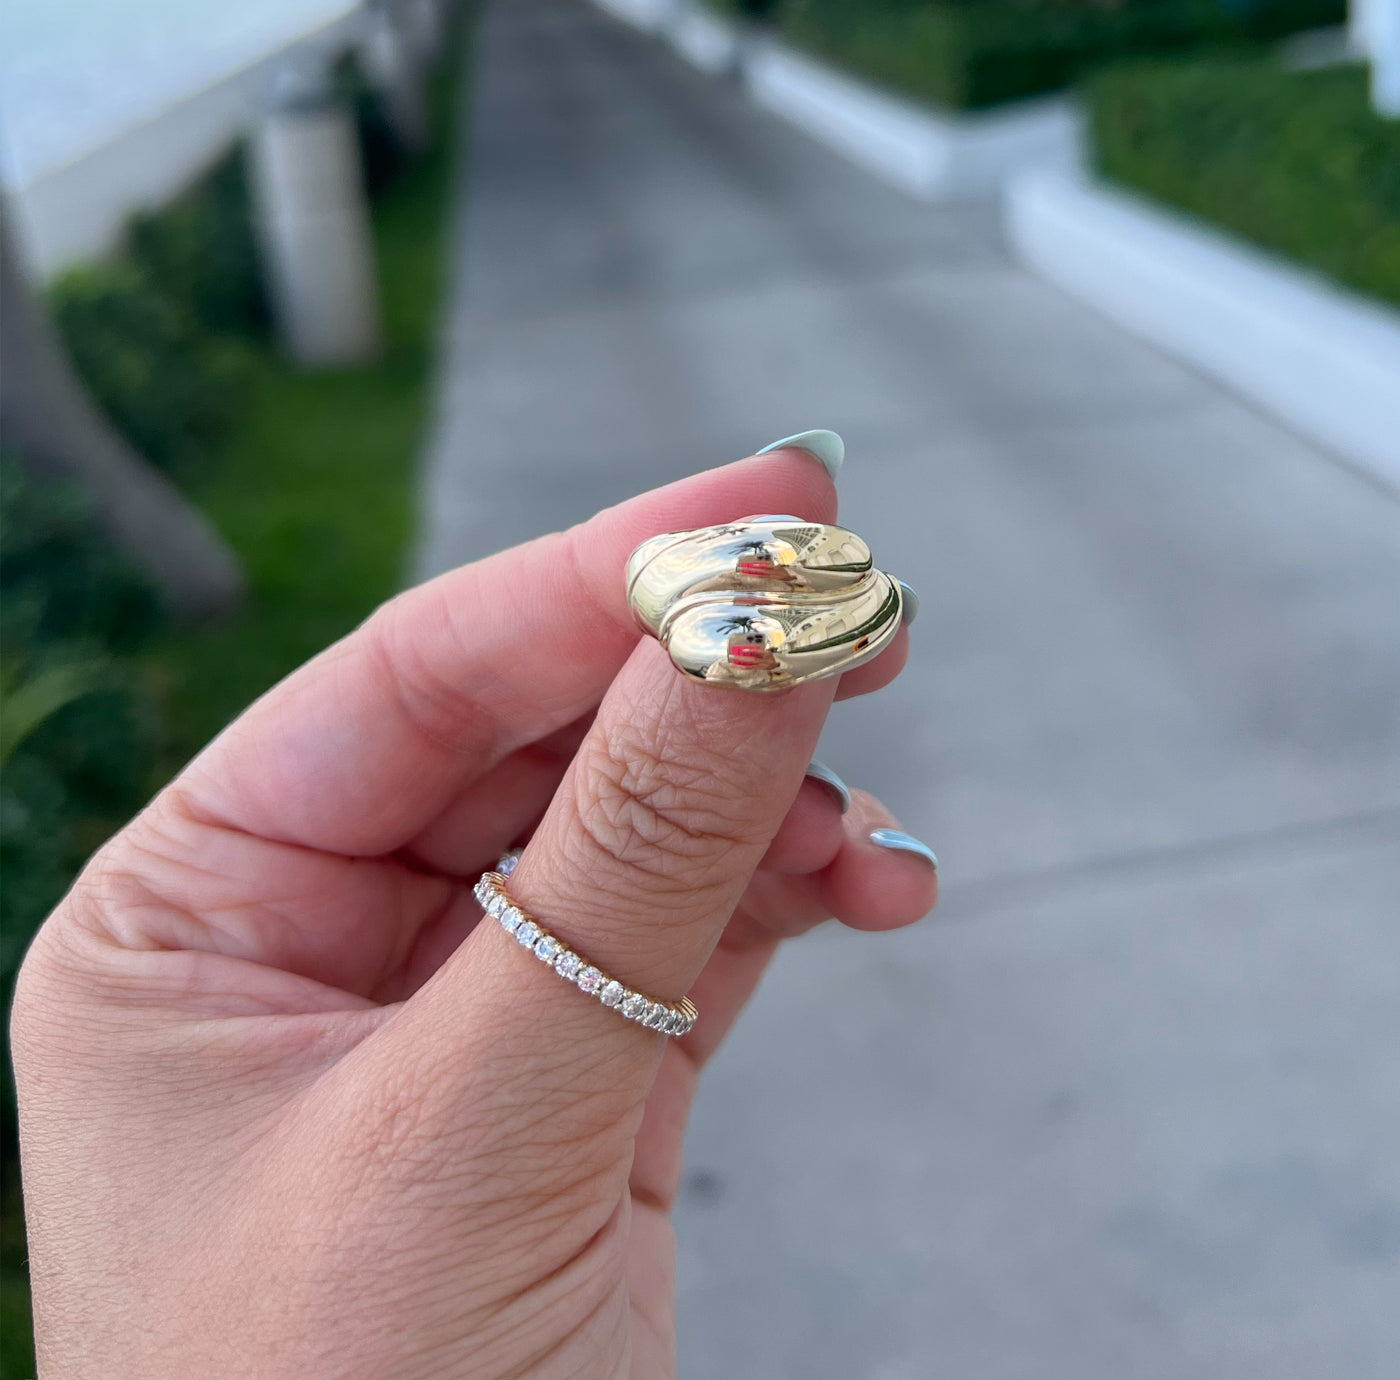 Gold Yin Yang Ring